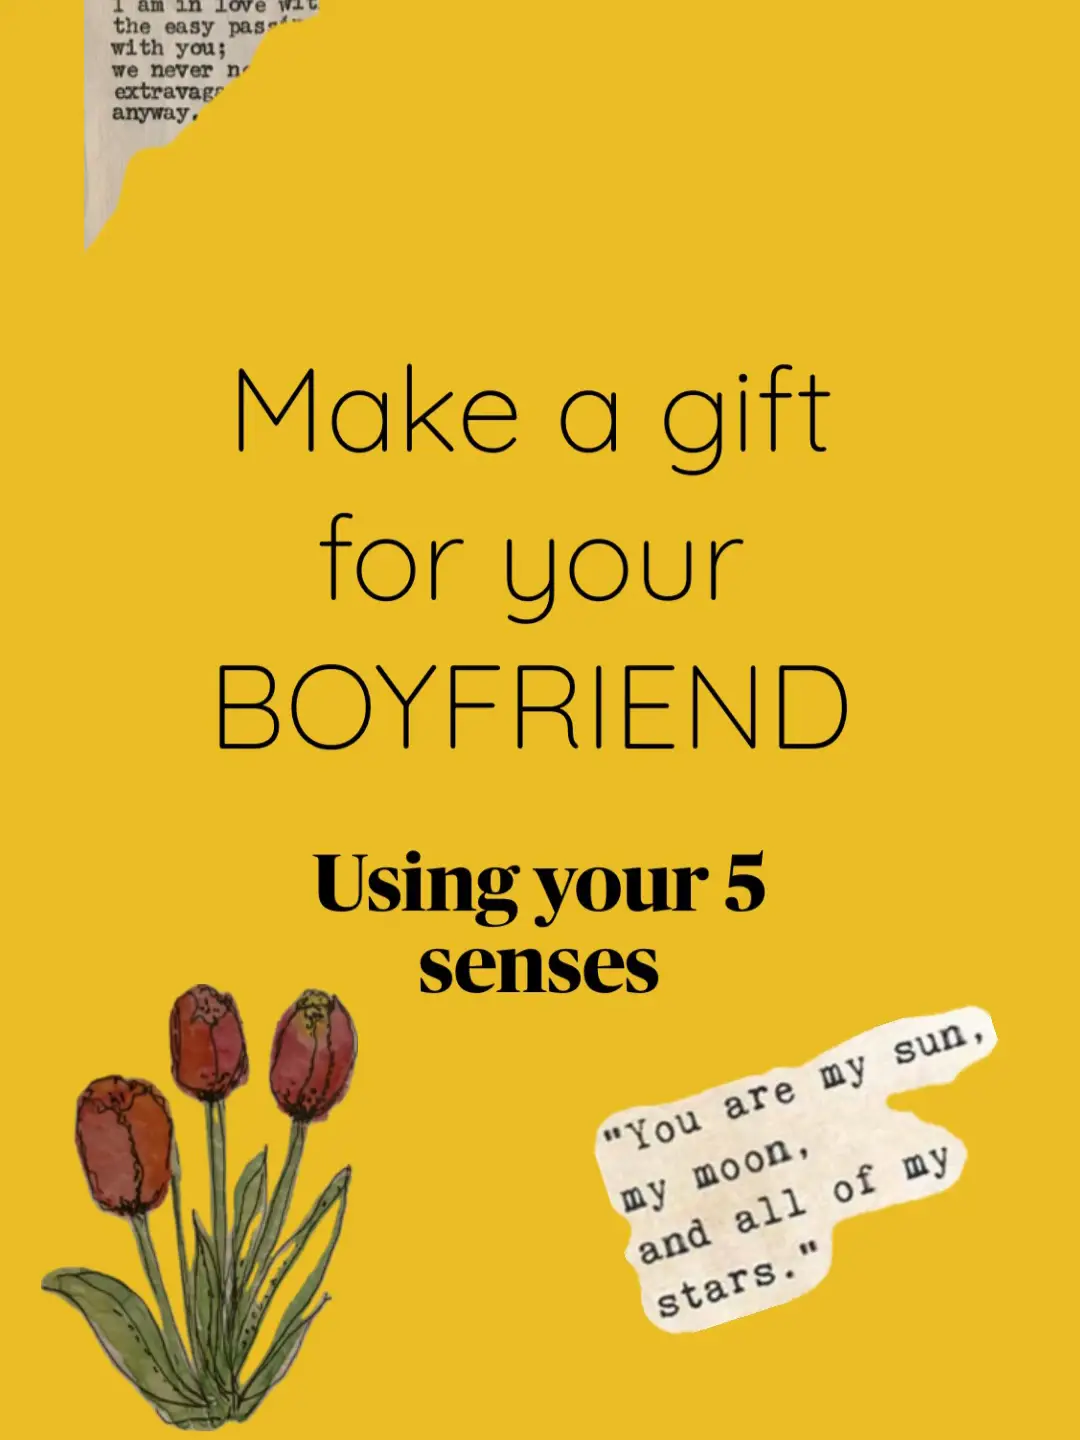 5 senses gift for boyfriend's birthday - so many ways to get creative , 5  senses gift for my boyfriend